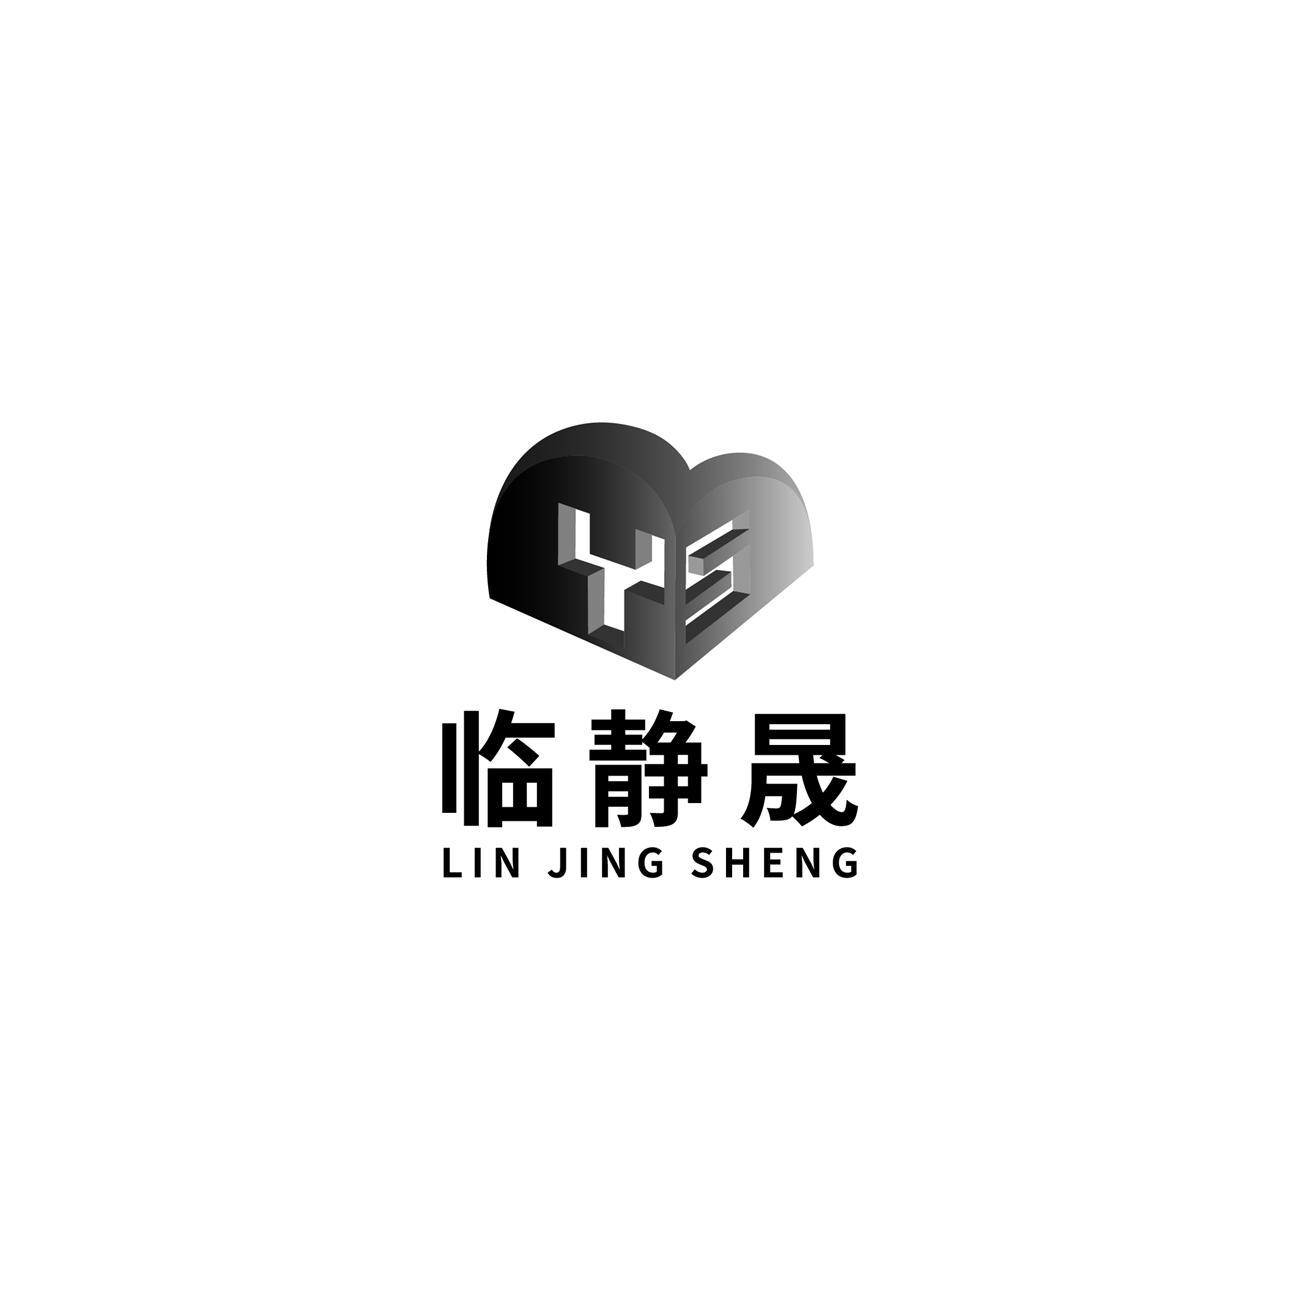 YS 临静晟logo